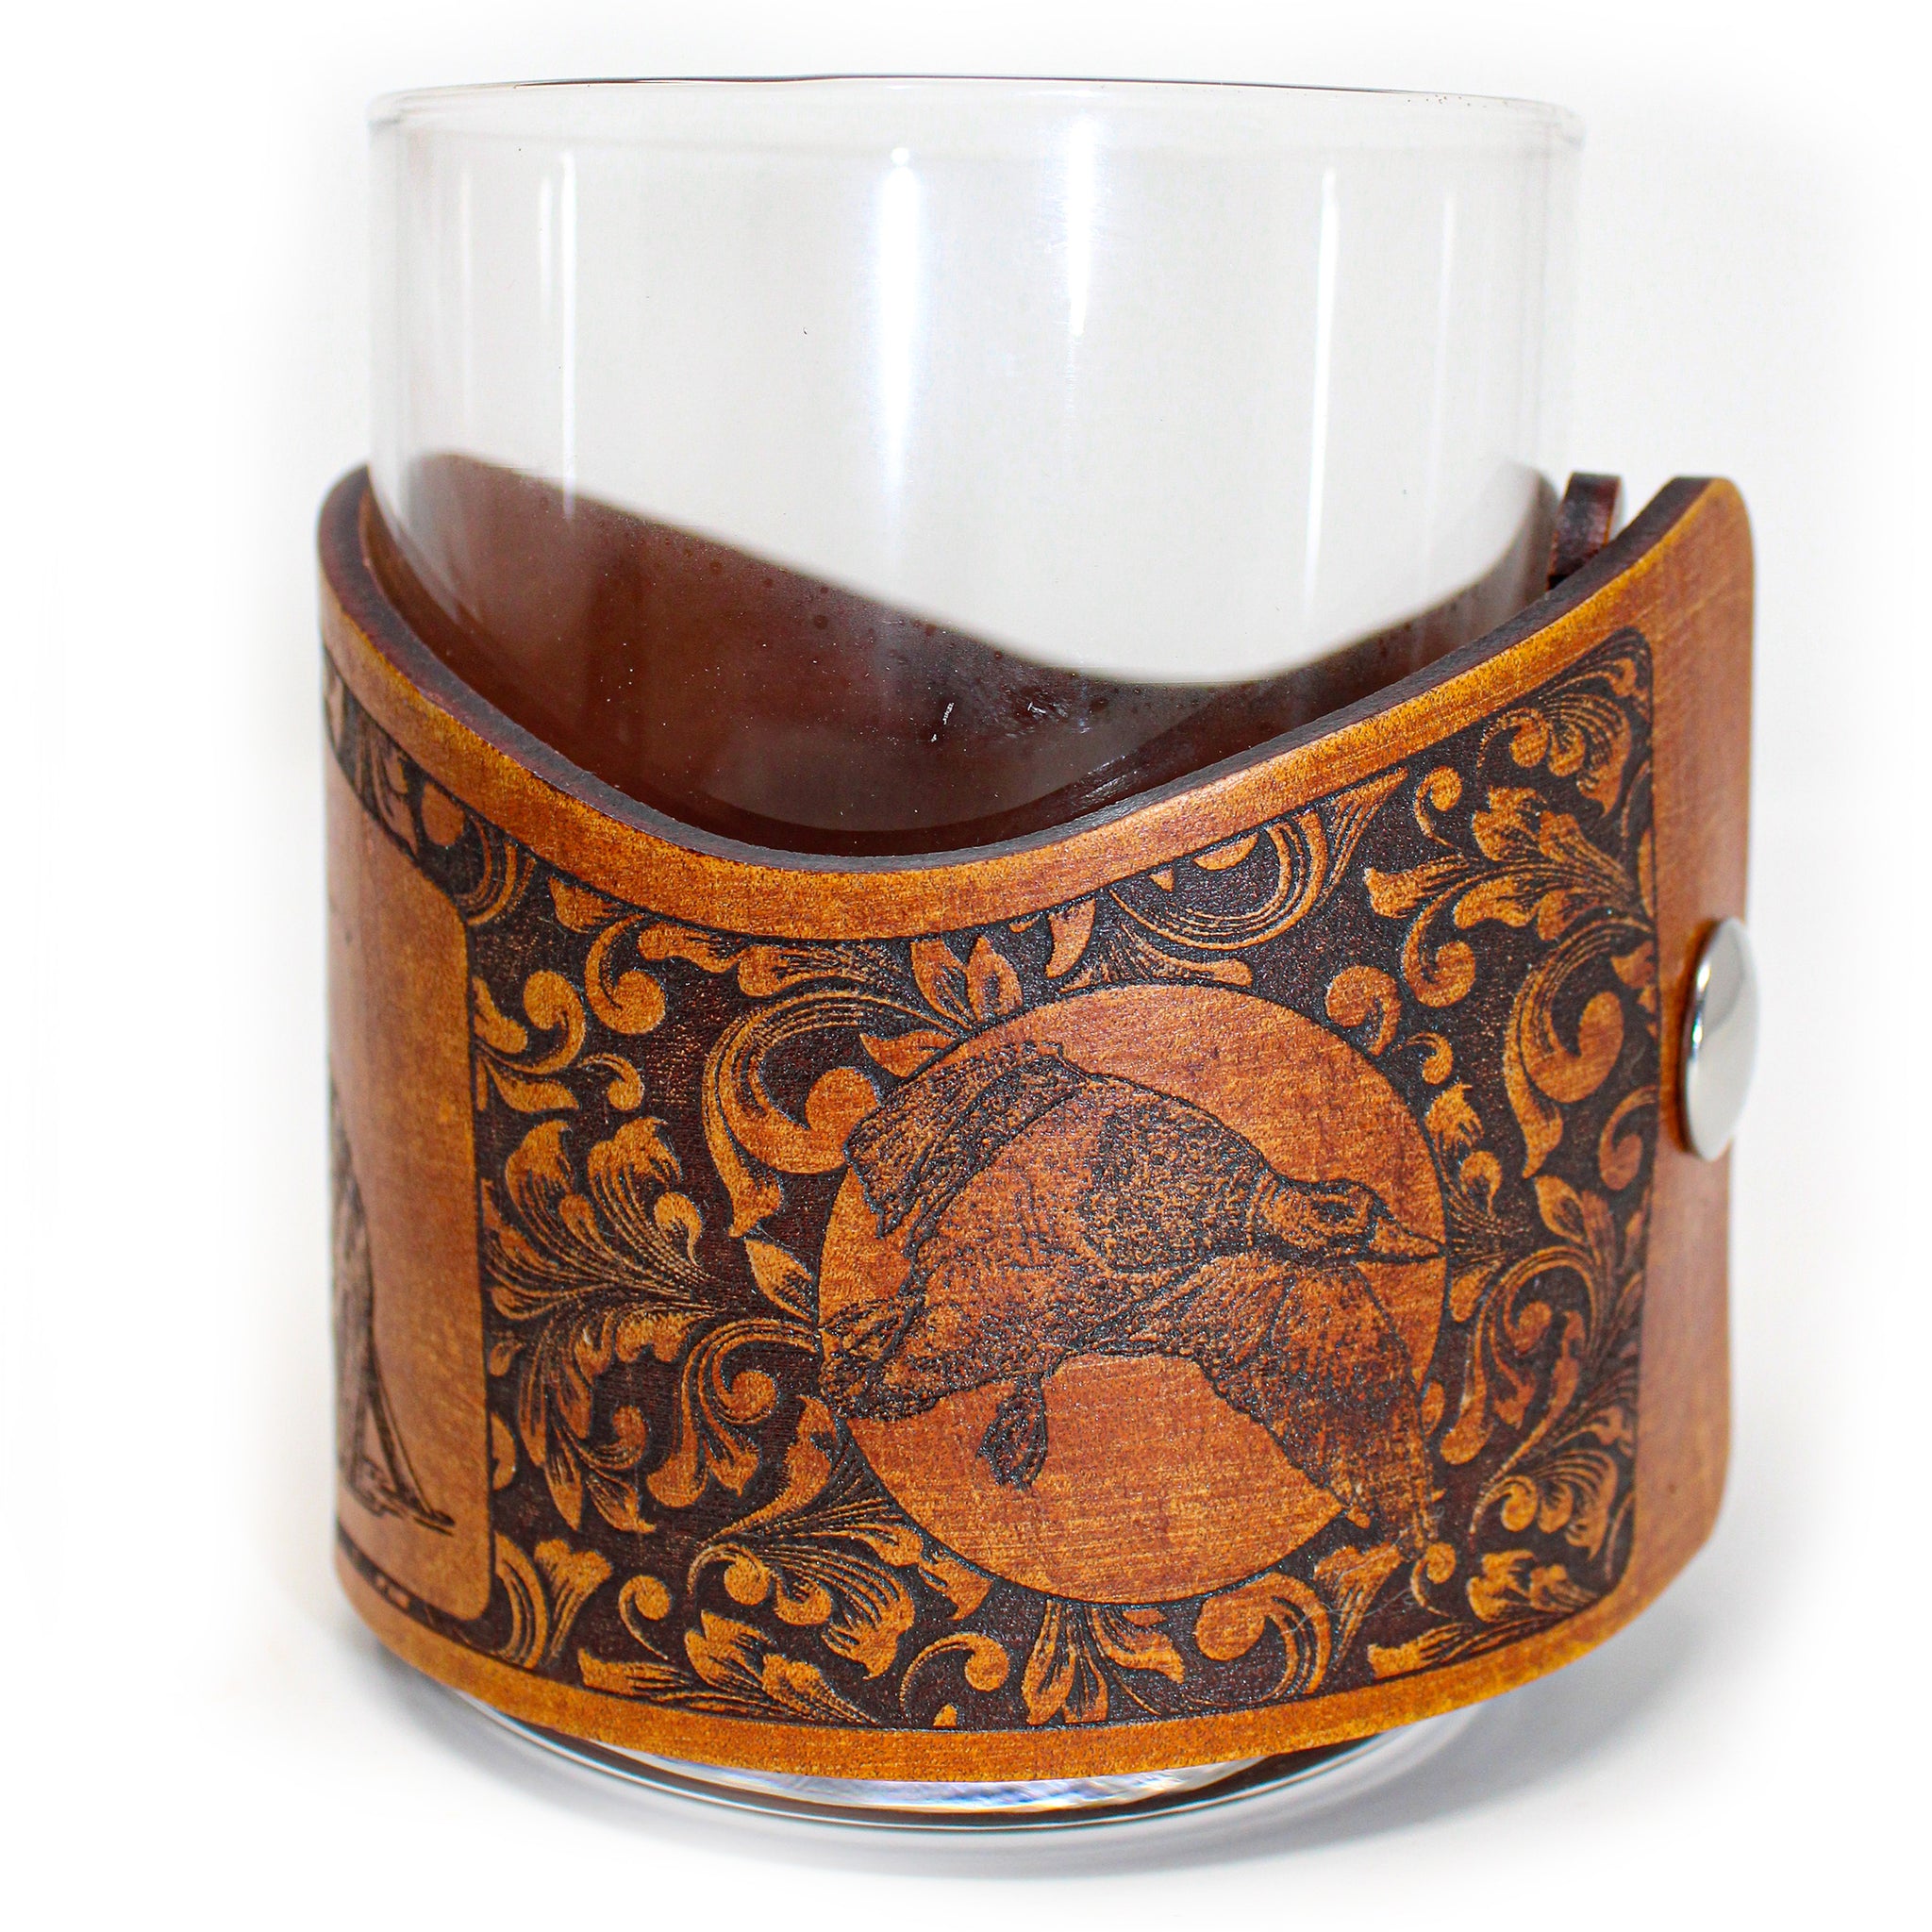 Whiskey Glass Leather Wrap - Mallard Retreived Bird Dog Engraver glass